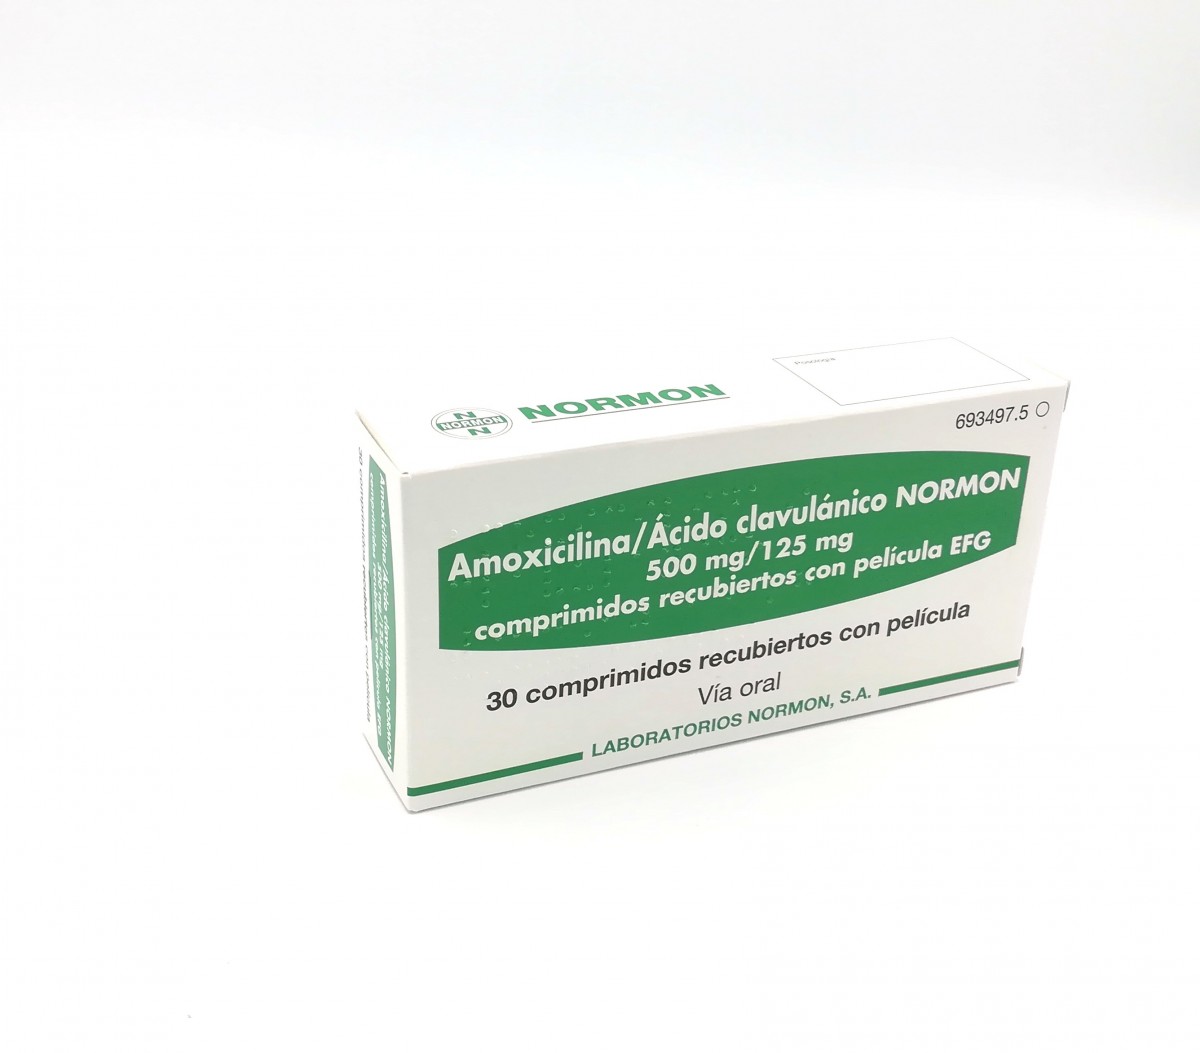 AMOXICILINA/ACIDO CLAVULANICO NORMON 500 mg /125 mg COMPRIMIDOS RECUBIERTOS CON PELICULA EFG, 30 comprimidos fotografía del envase.